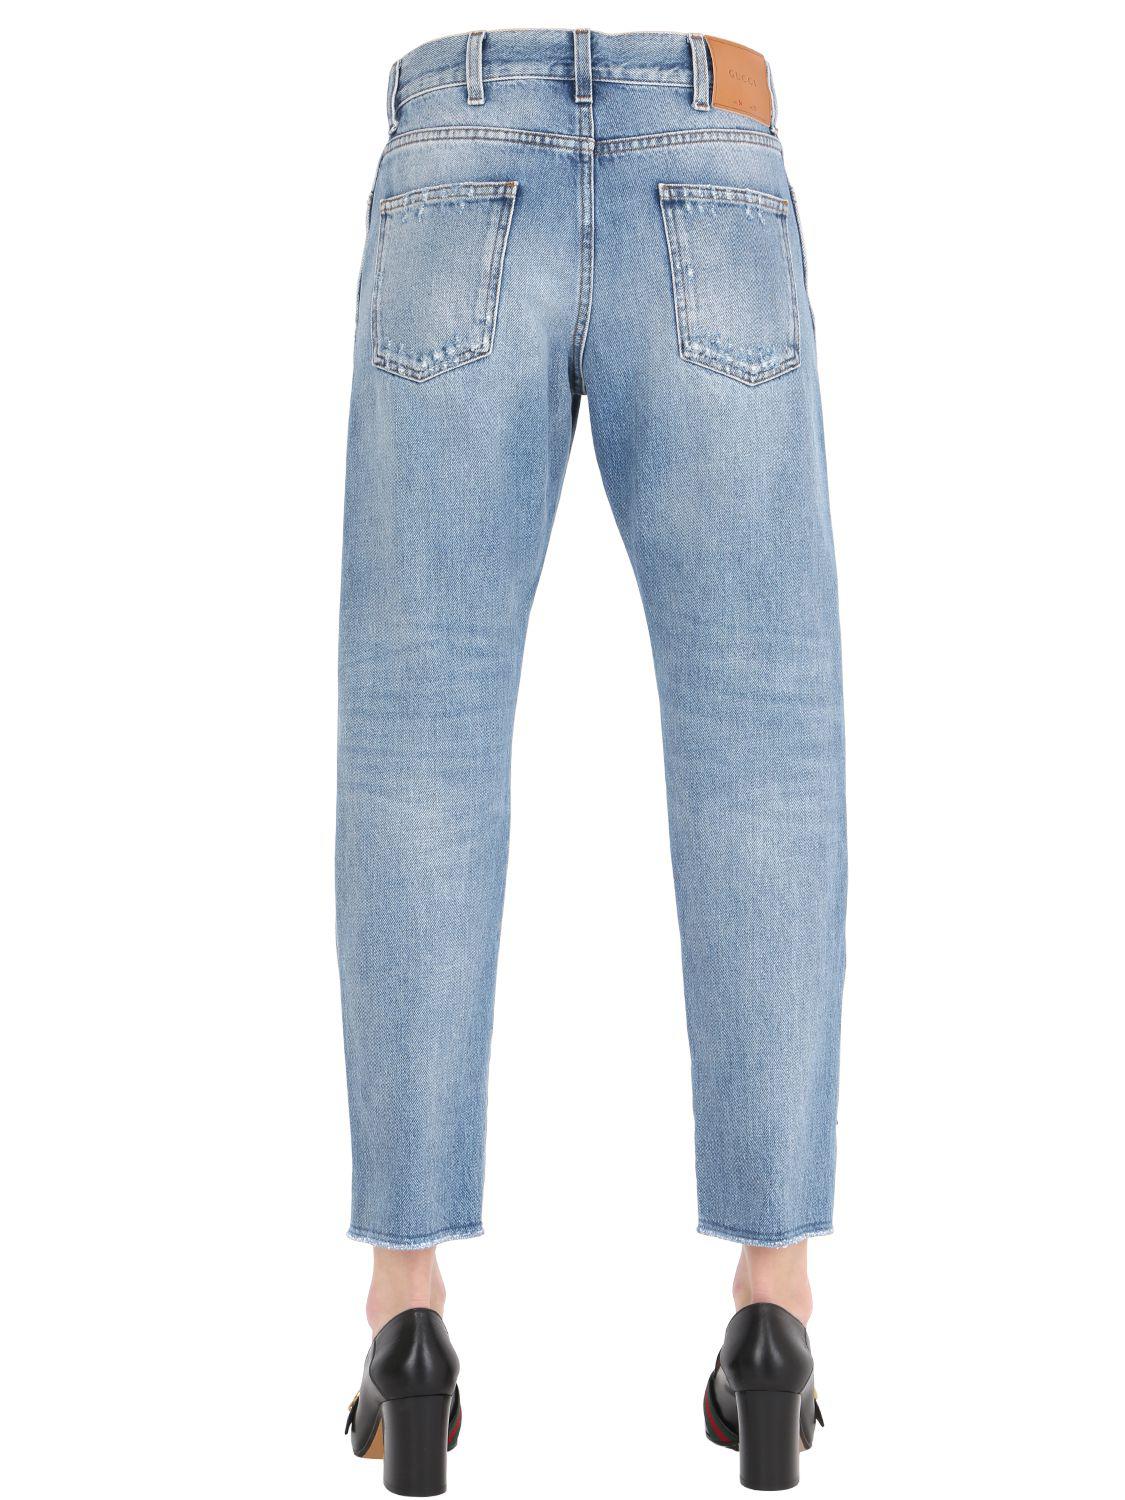 Gucci Boyfriend Butterfly Patch Denim Jeans in Blue - Lyst